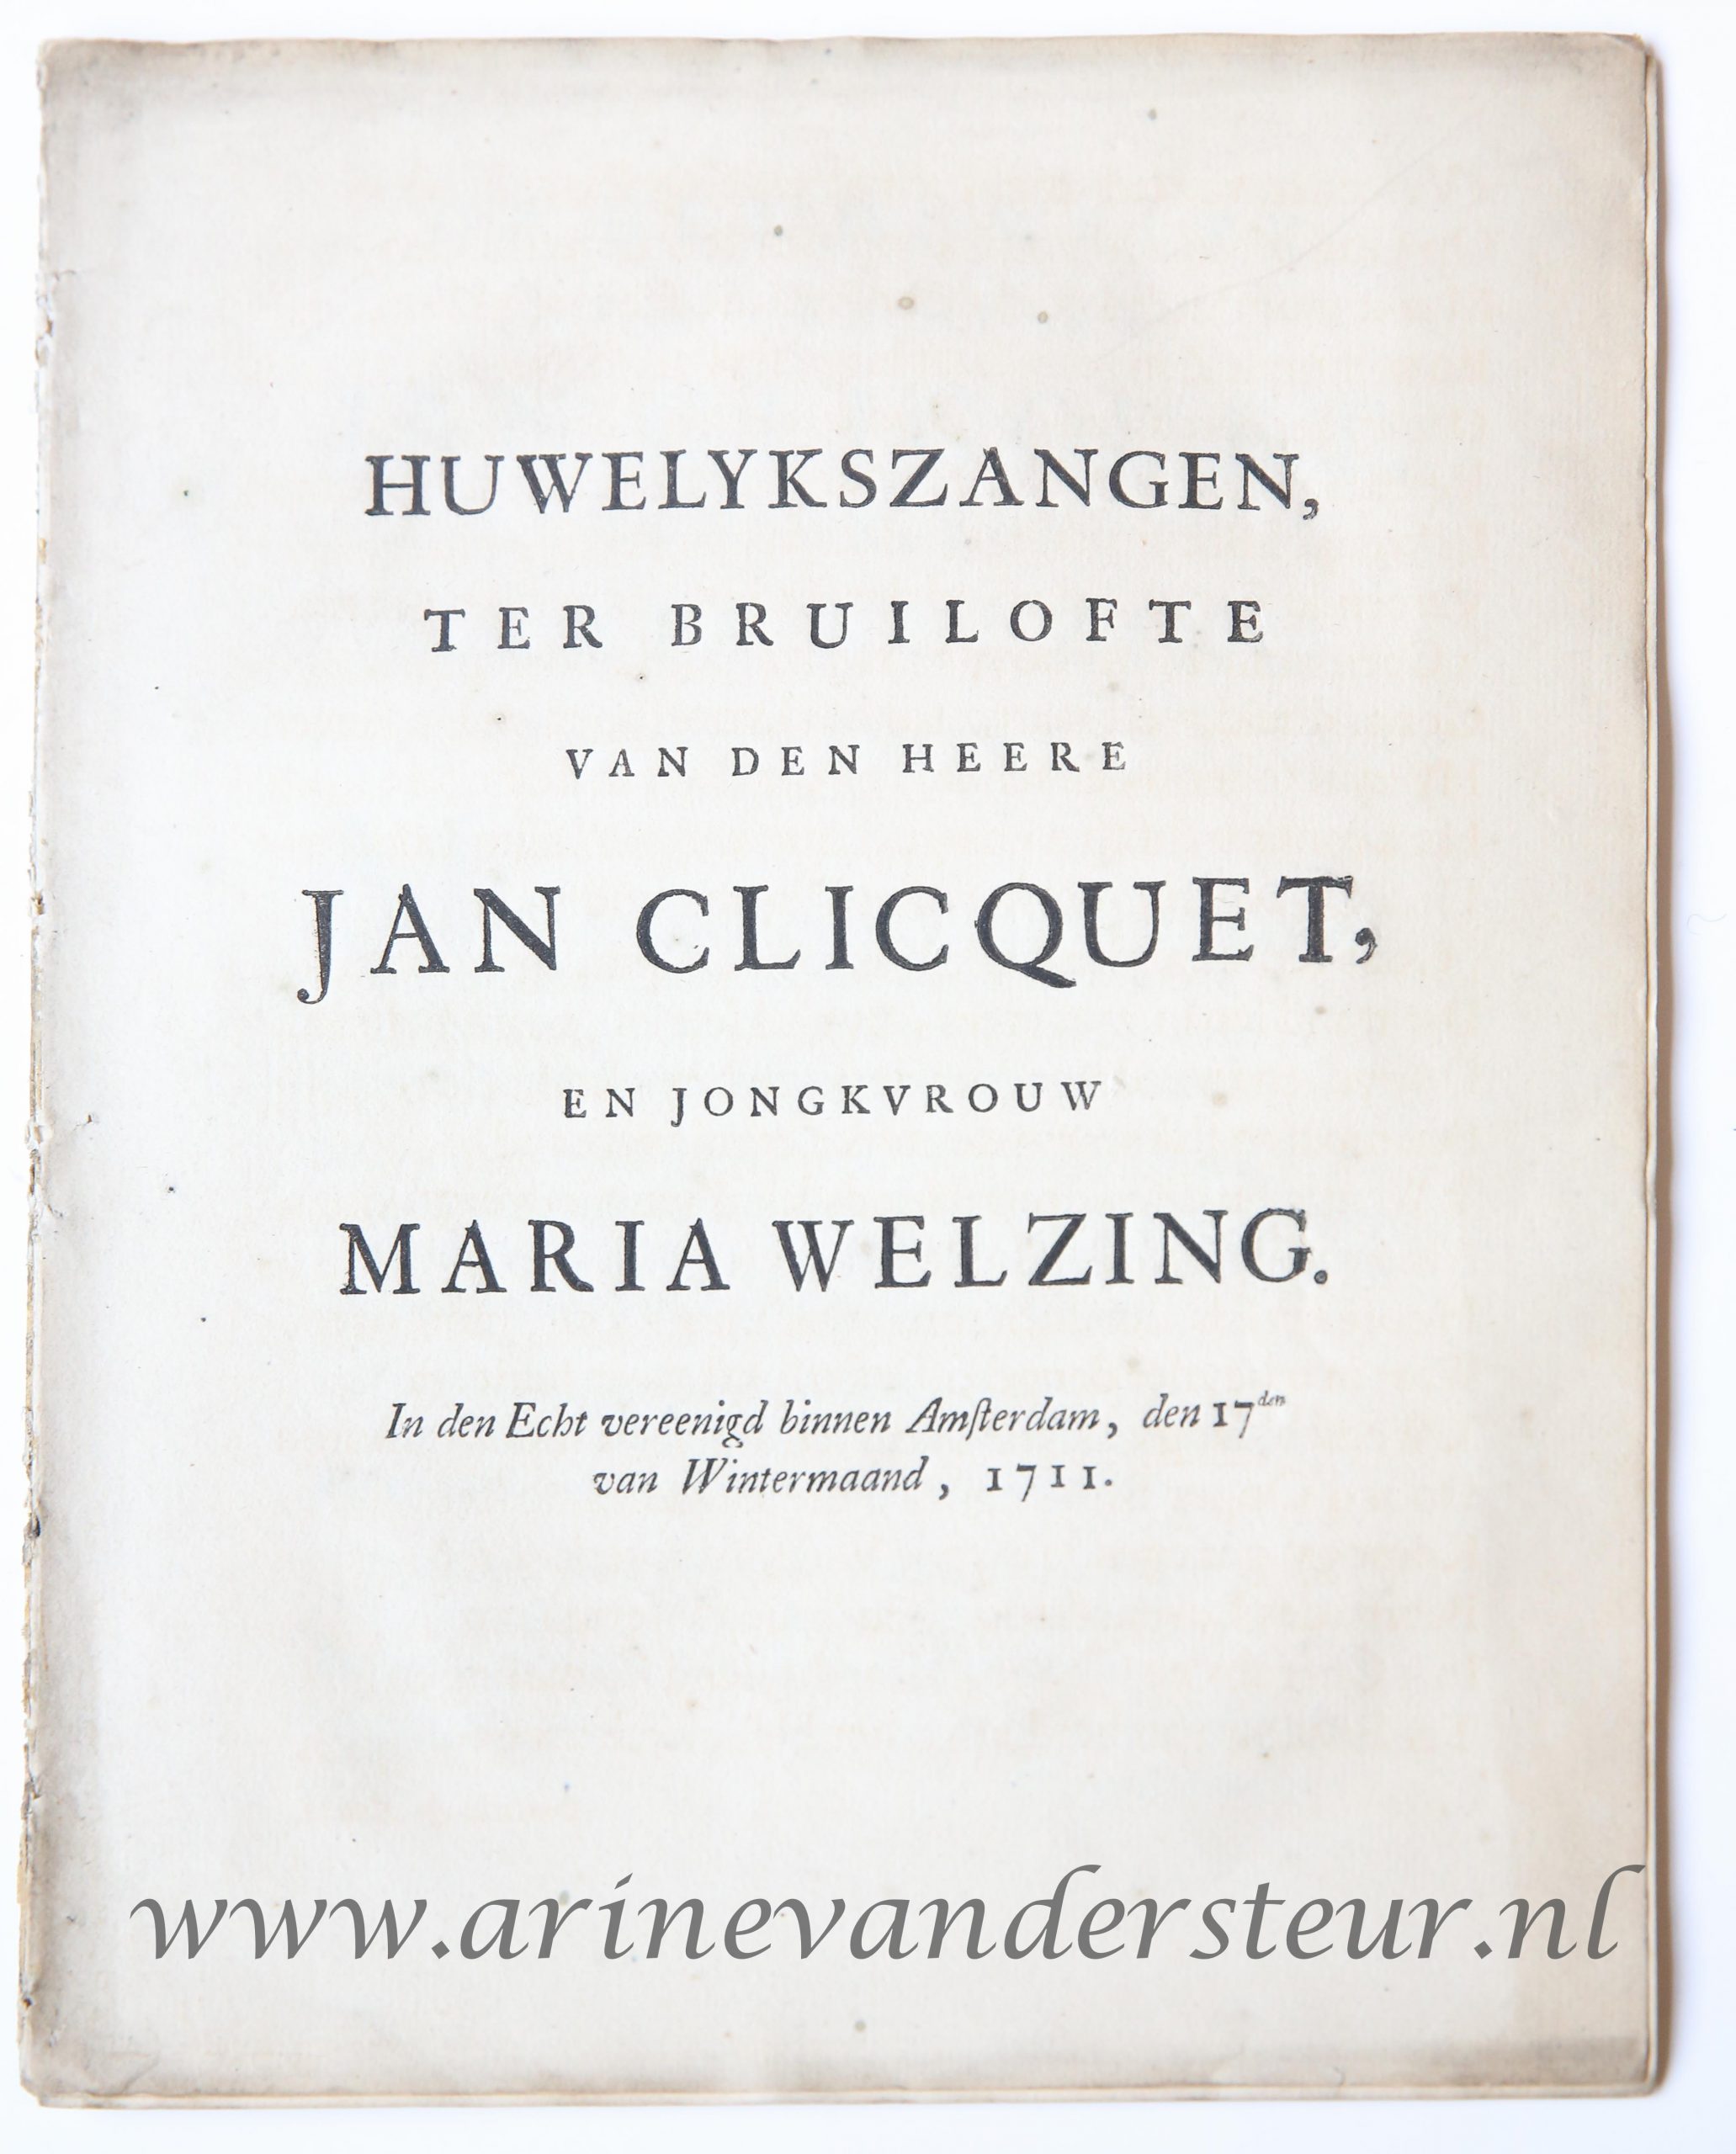  - Huwelykszangen ter bruilofte van ... Jan Cliquet en ... Maria Welzing, in den echt vereenigd binnen Amsterdam, den 17den van wintermaand 1711. z.p., 1711. 4: [16] p.